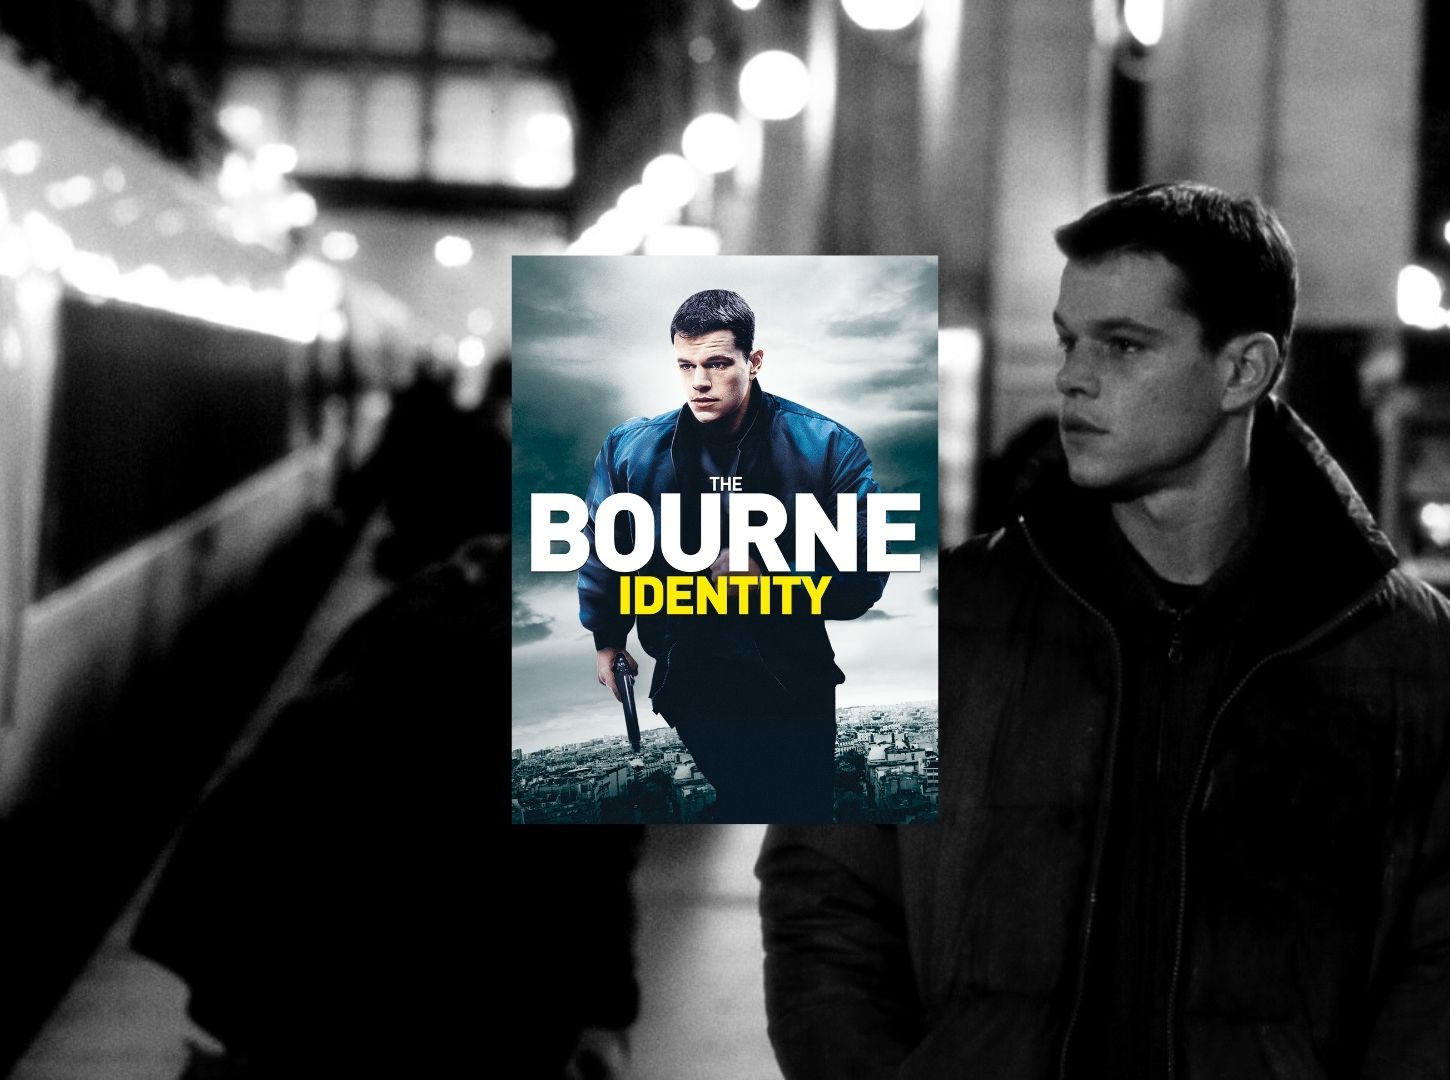 De Jason a Bourne – Um conto provocação